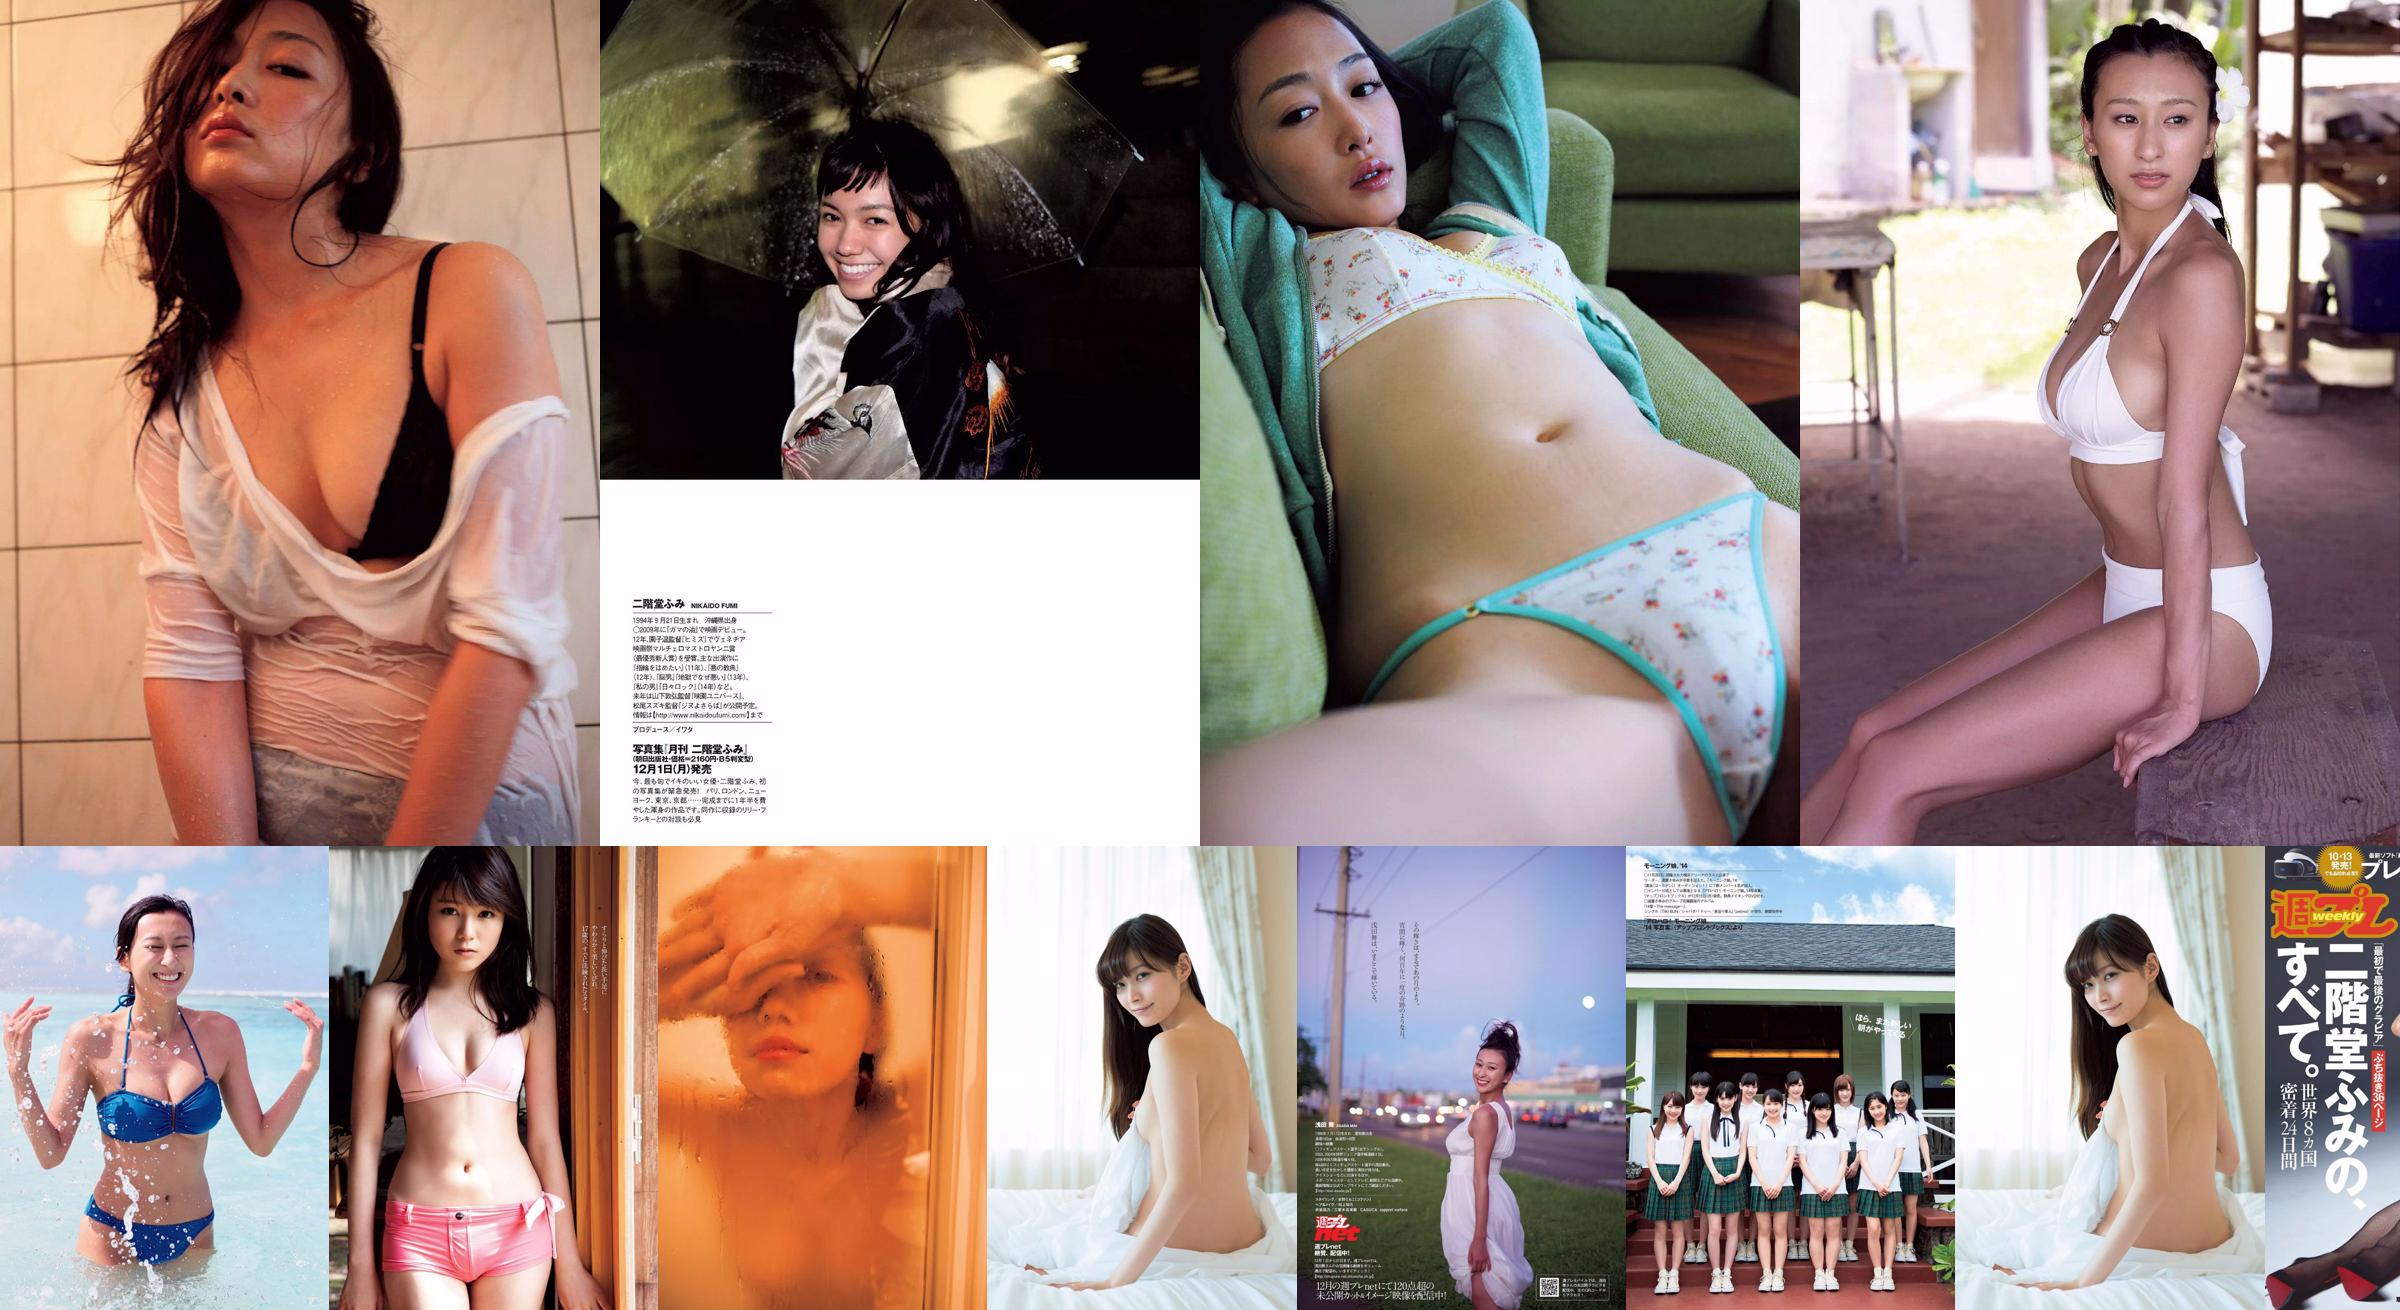 Fumi Nikaido [Wöchentlicher Playboy] 2016 No.43 Photo Magazine No.4be538 Seite 2